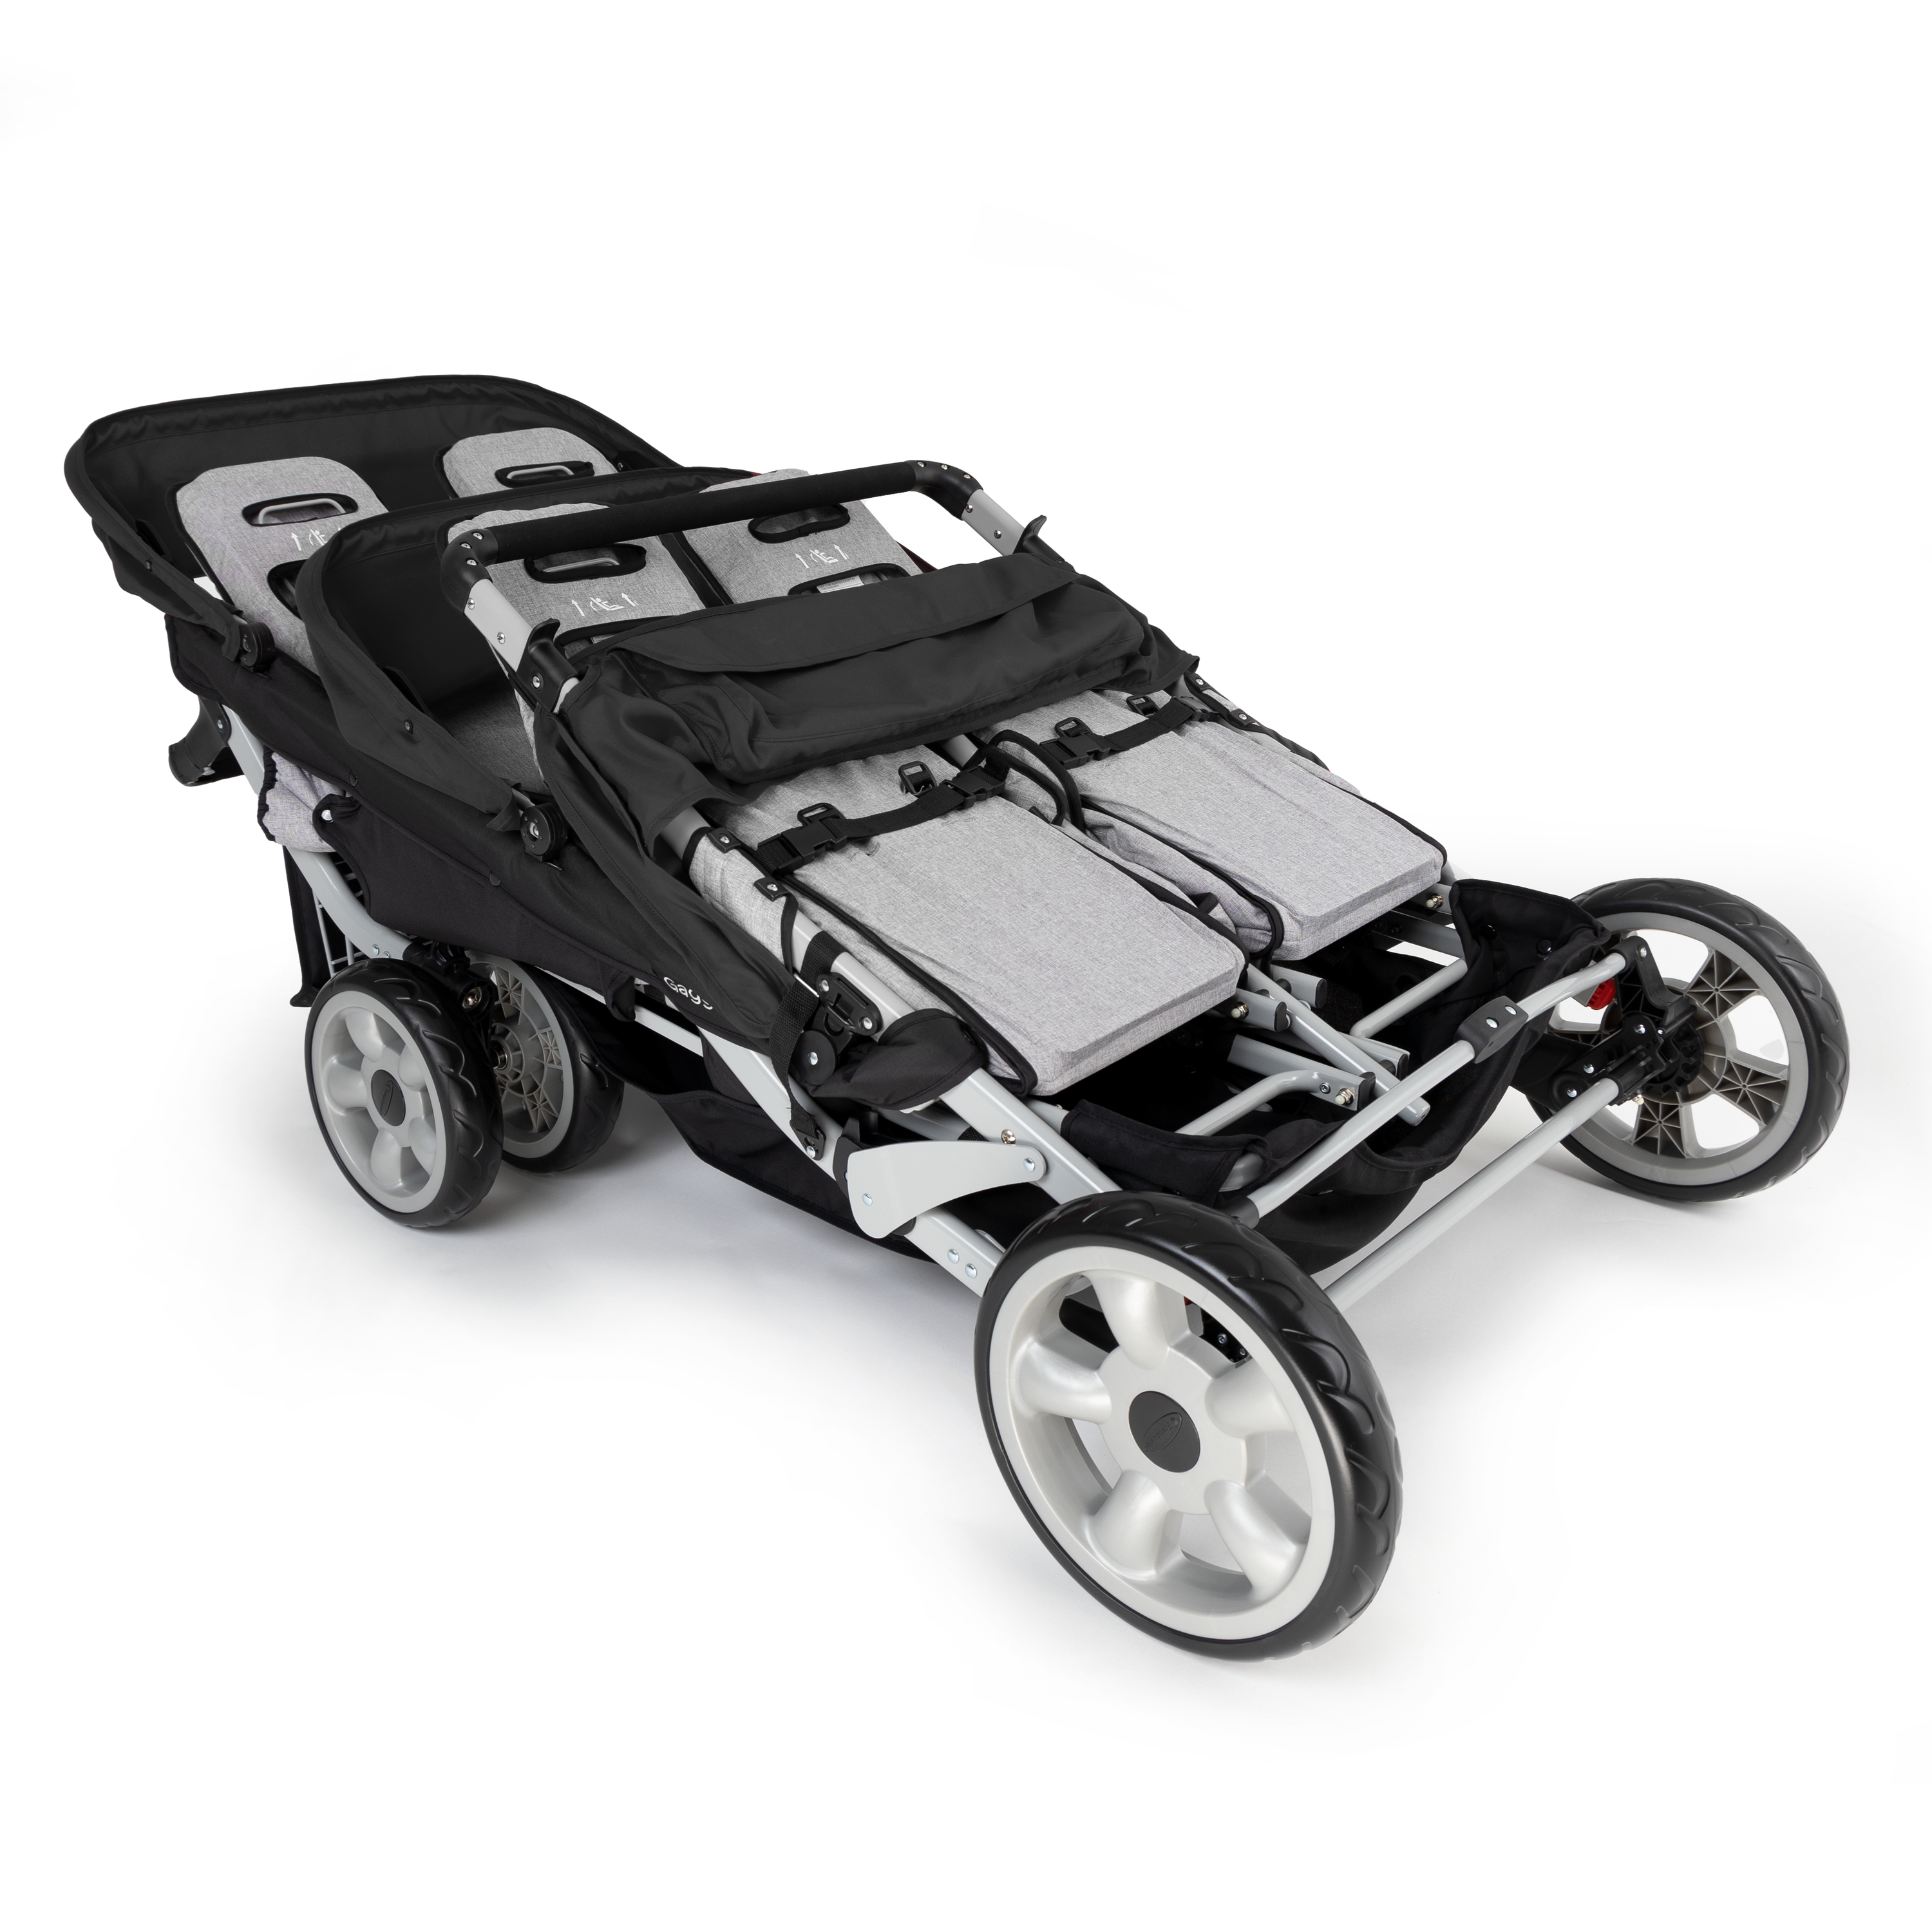 Gaggle Jamboree opvouwbare kinderwagen / buggy voor 6 kinderen in zwart